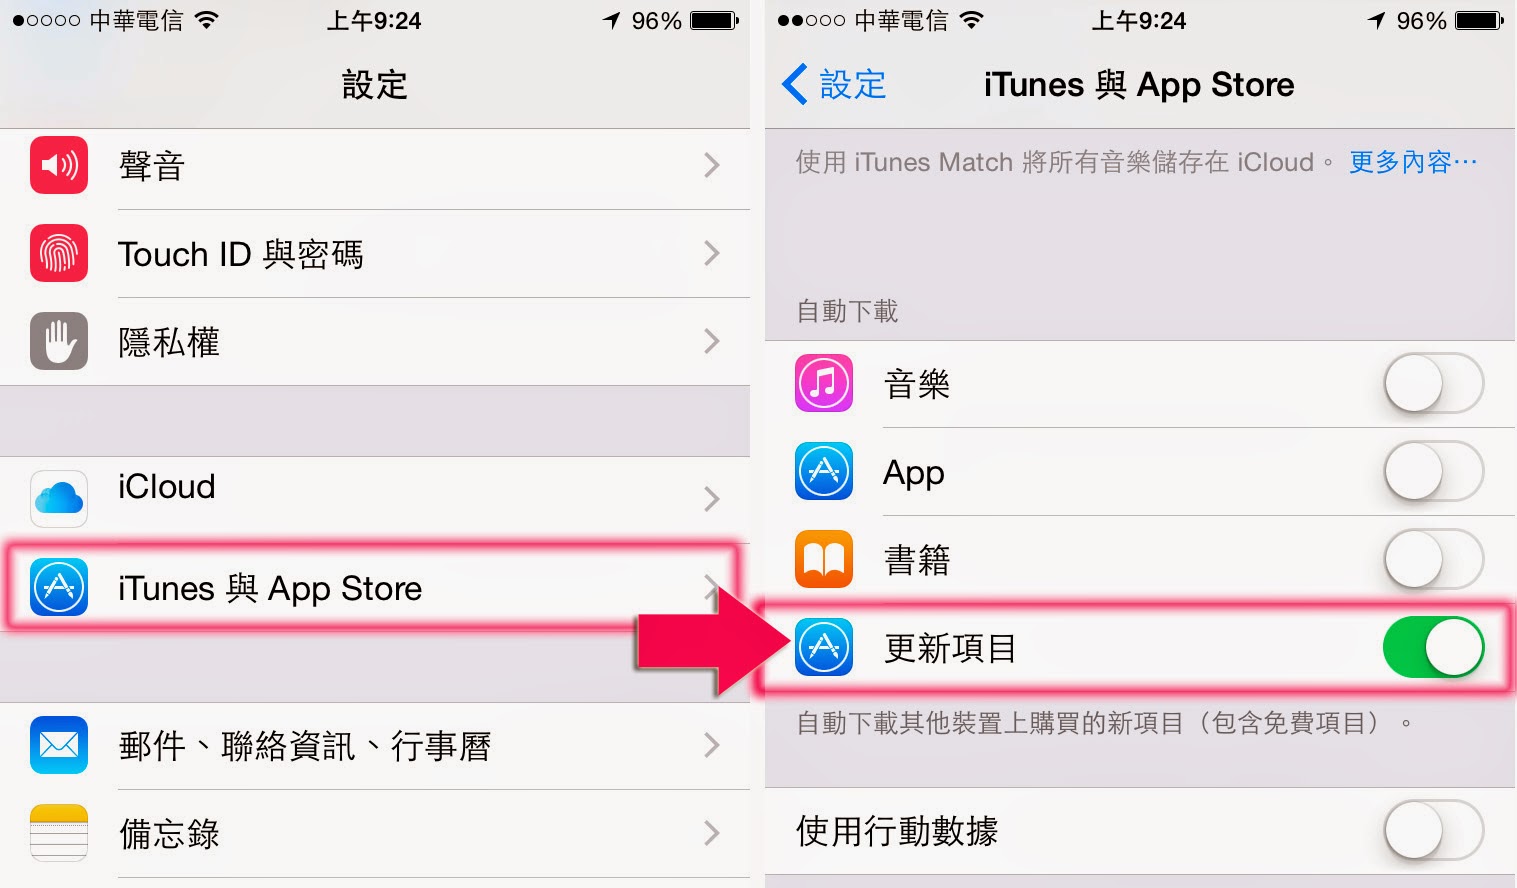 App Store 無法下載與更新 App 怎麼辦 | App Store故障, iOS 9教學, 不需越獄類教學, 無法更新App | iPhone News 愛瘋了